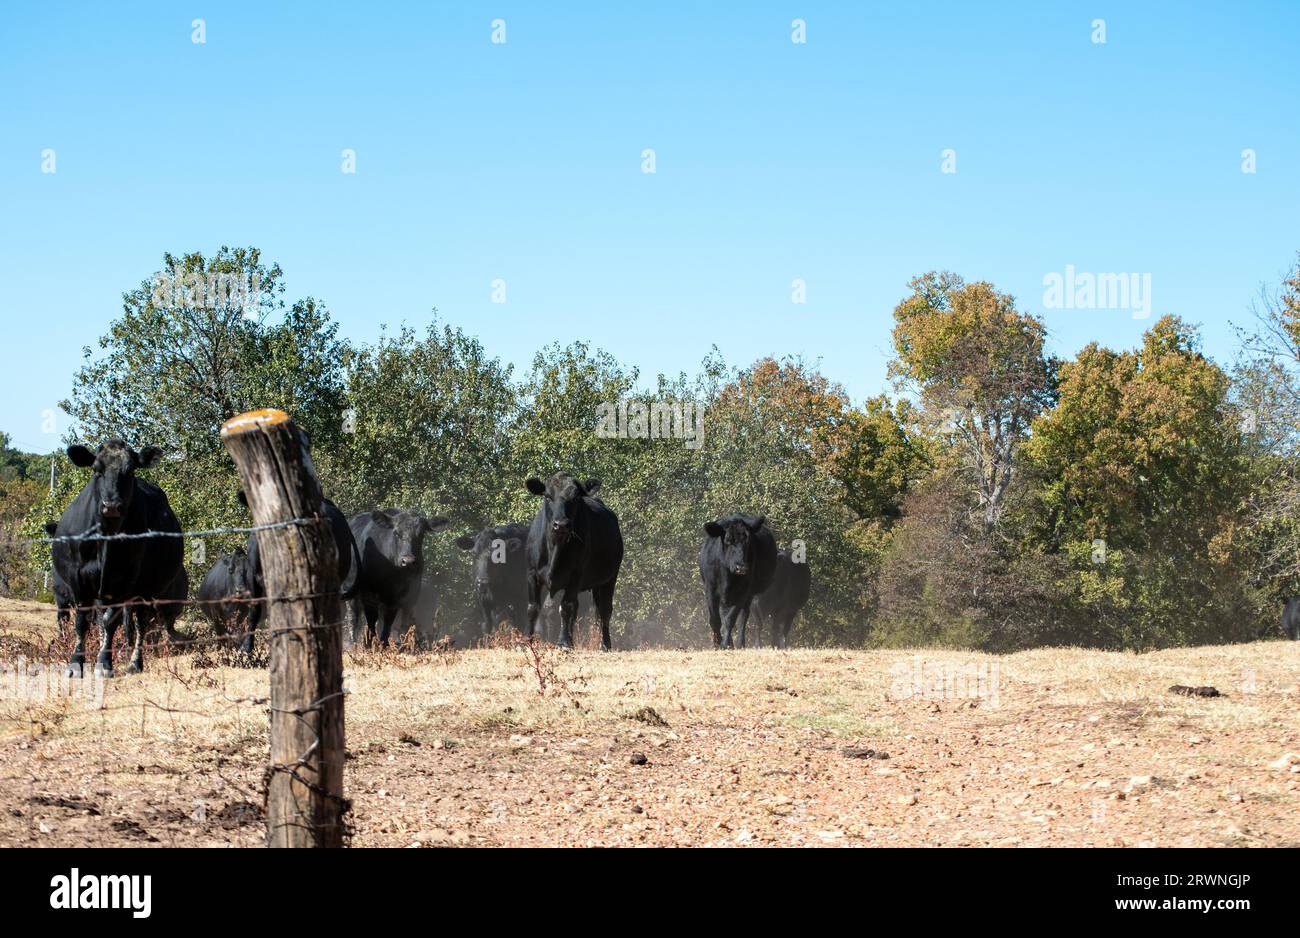 Una manada de ganado angus negro camina hacia la puerta abierta. Foto de stock